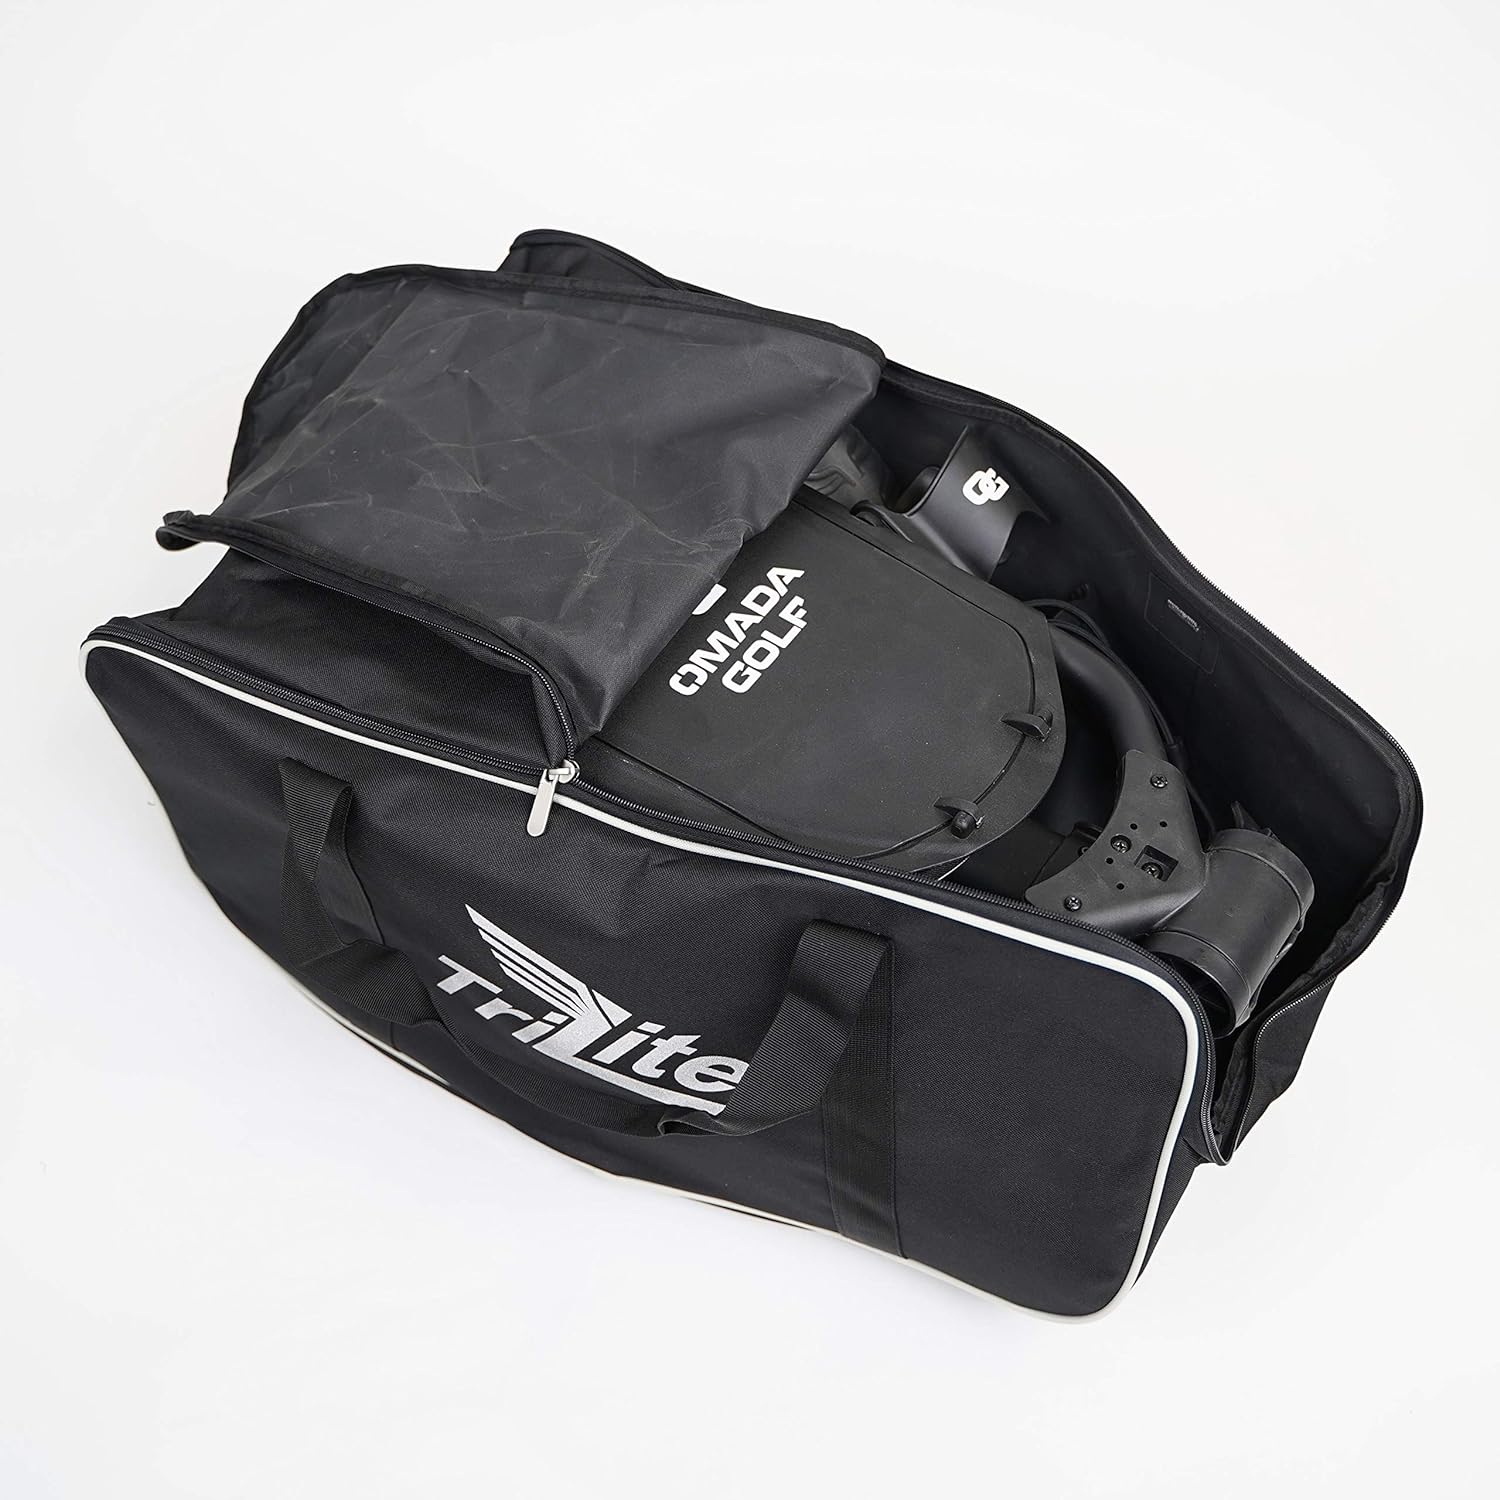 OMADA GOLF Trilite Carry Bag Review